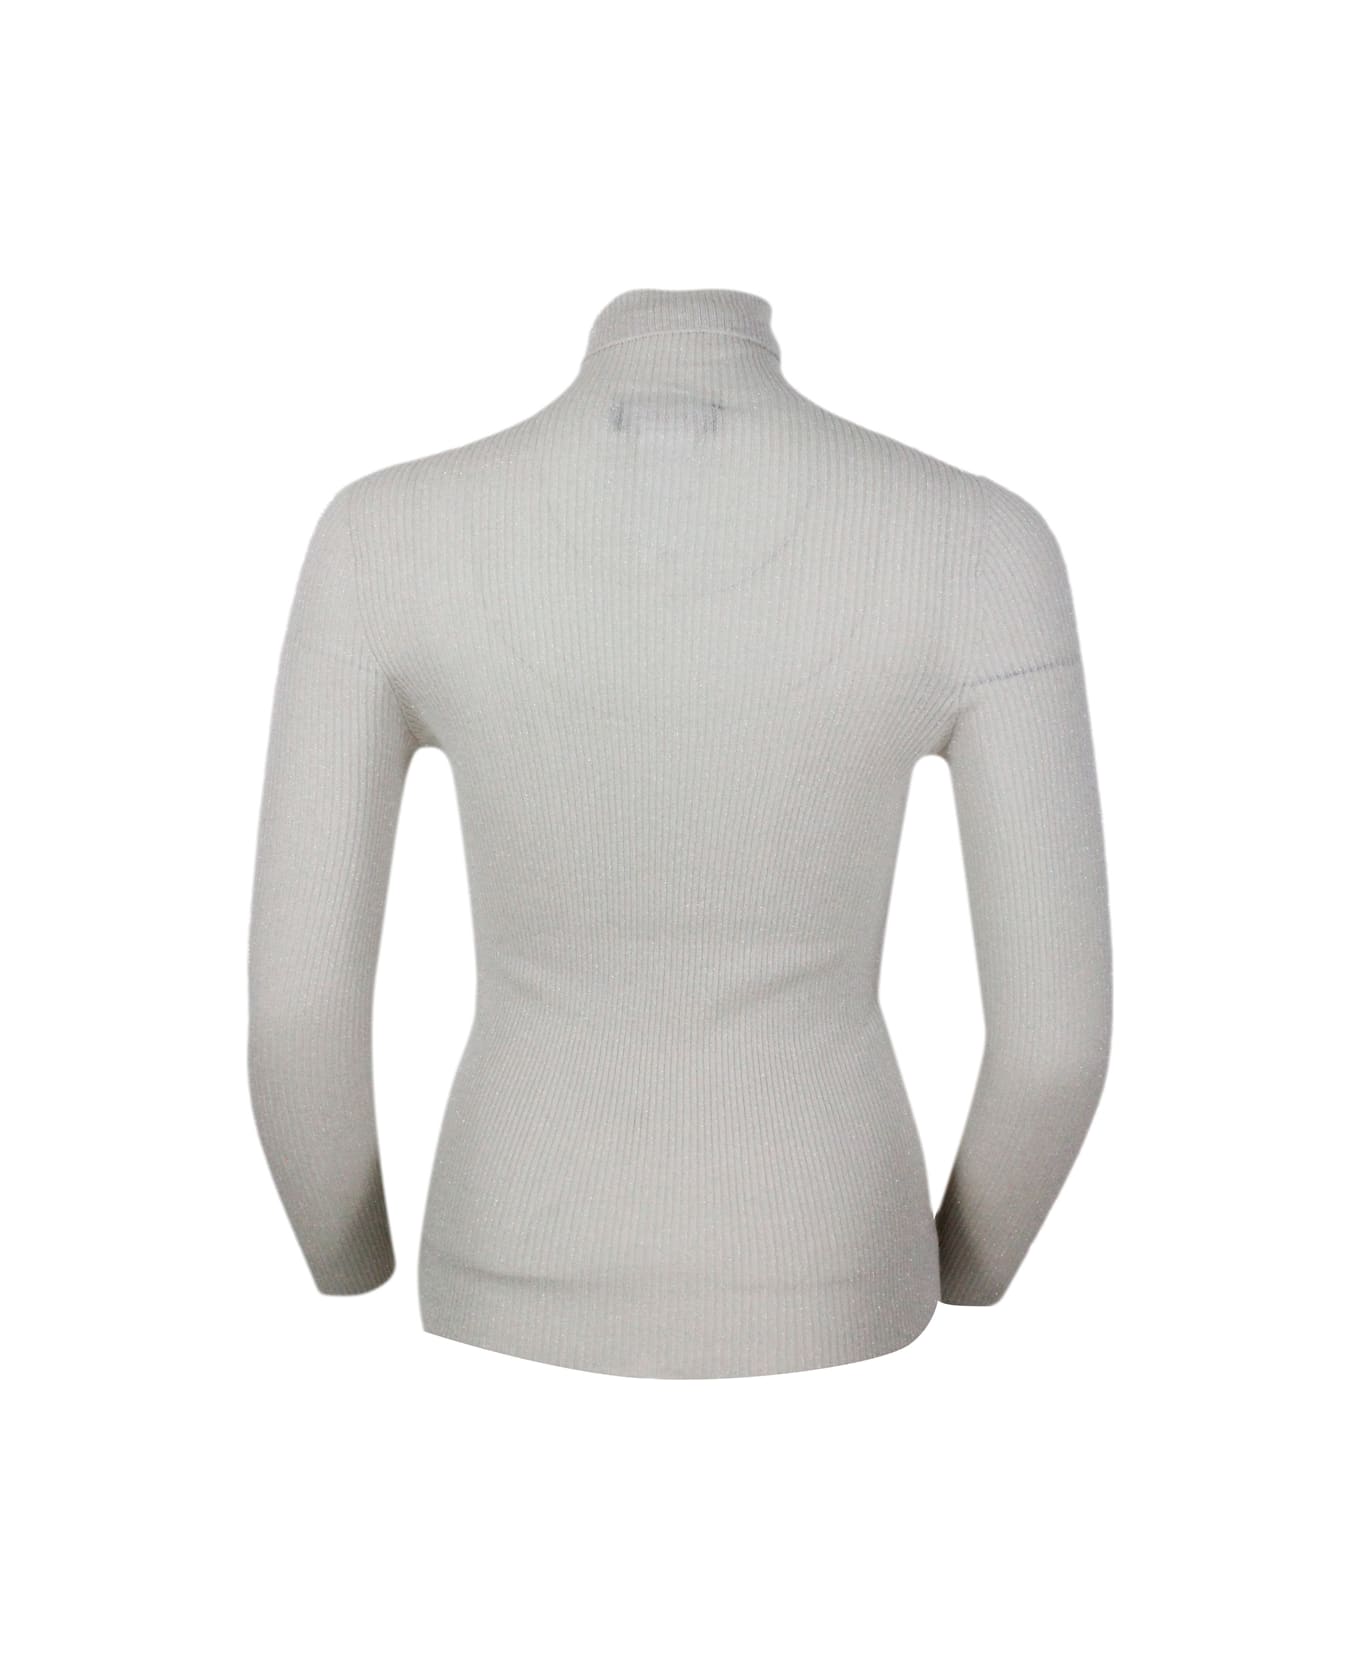 Fabiana Filippi Long-sleeved Turtleneck Sweater In Merino Lamè Embellished With Shiny Lurex That Gives Brightness - Beige